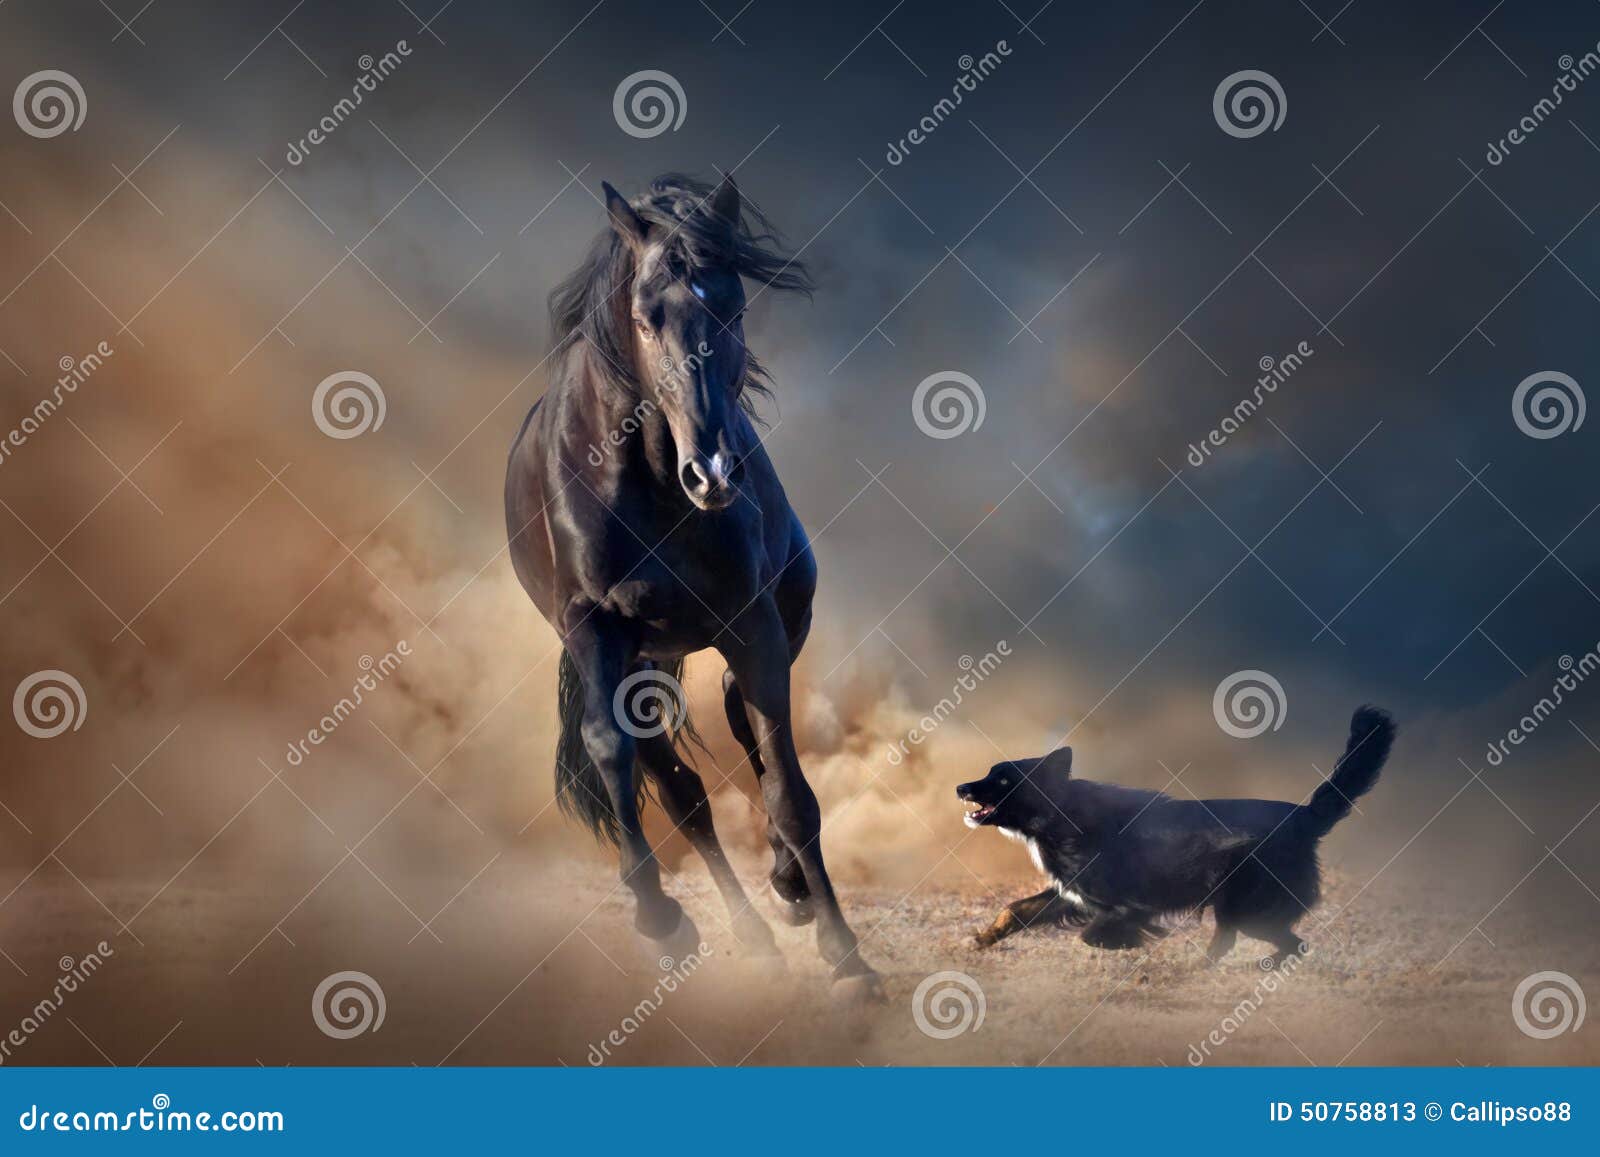 黑公马马. 与狗的美丽的黑公马在沙漠尘土跑反对日落天空